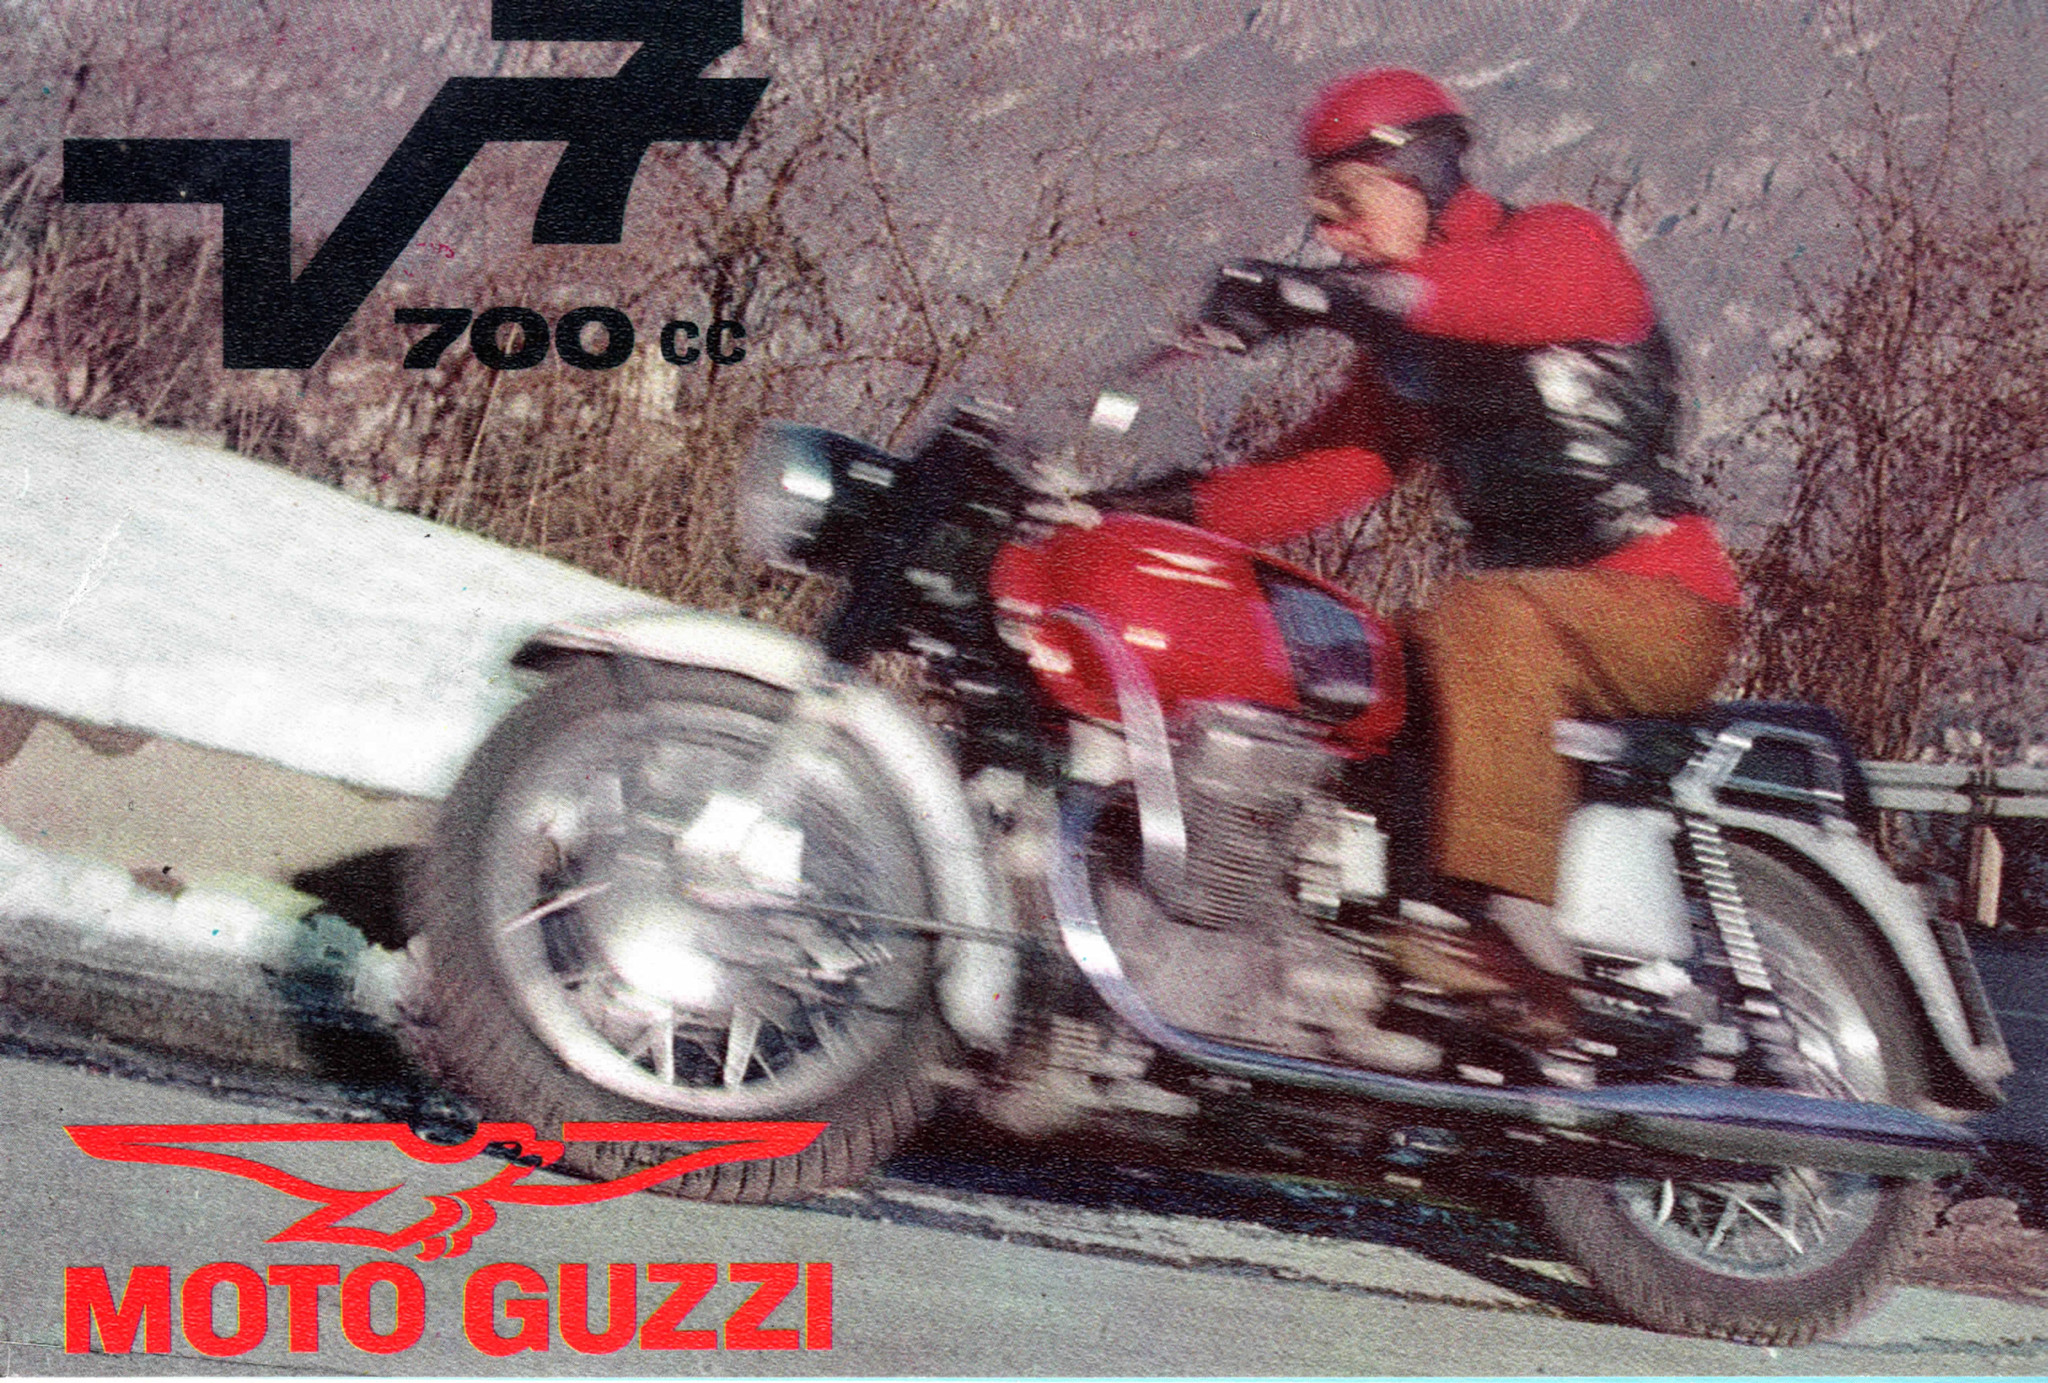 Brochure - Moto Guzzi V700